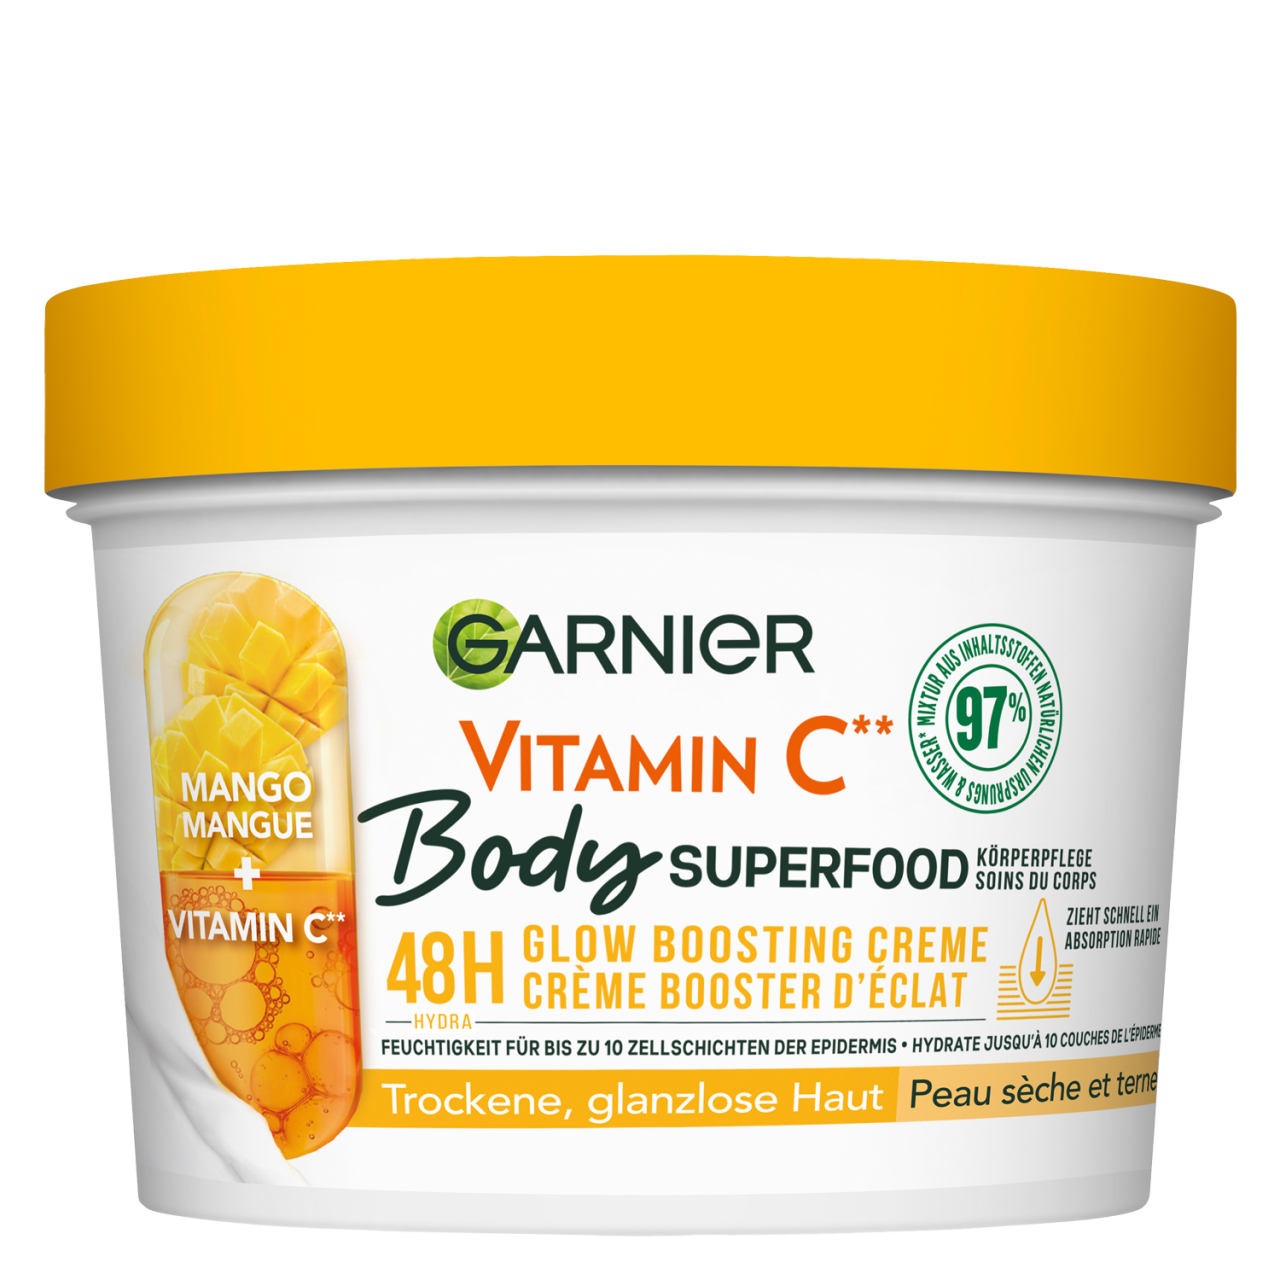 Skinactive Body - Superfood Mango Vitamin C Körperpflege von GARNIER